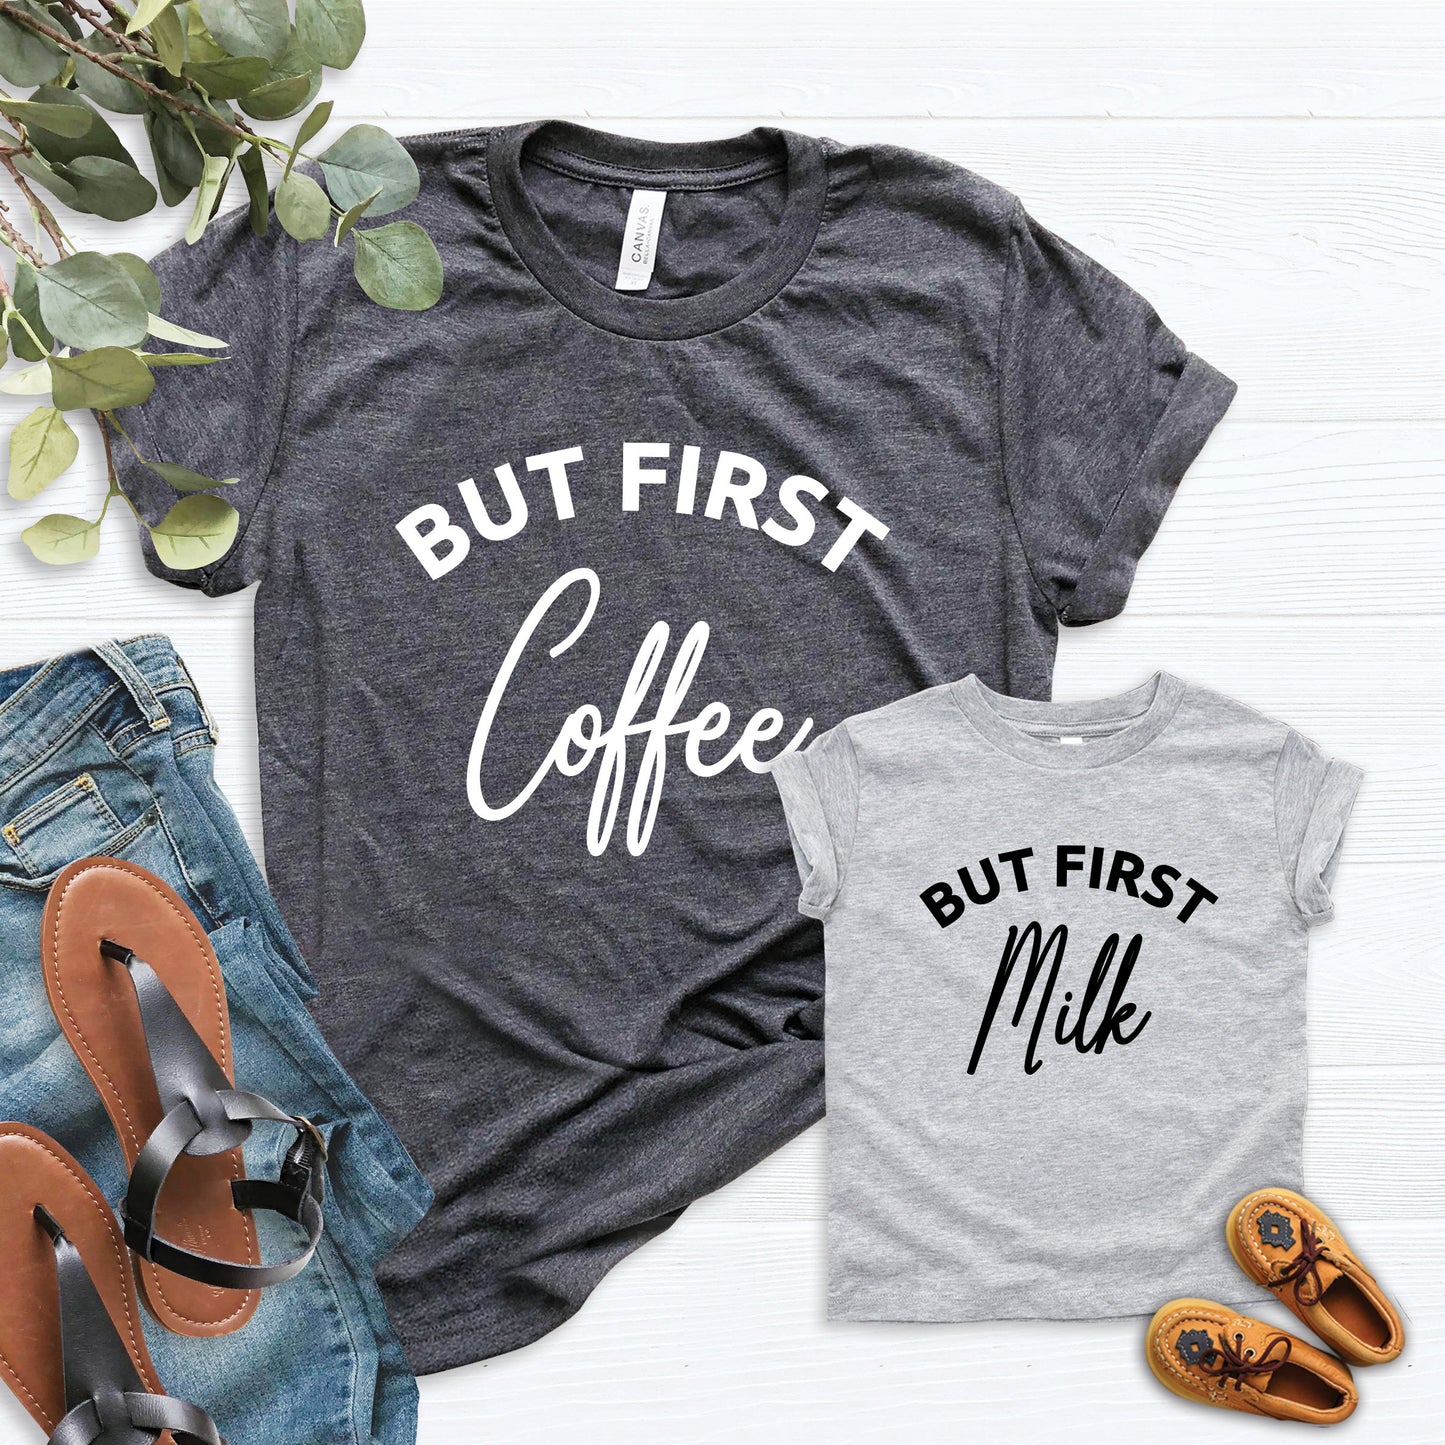 But First Coffee & But First Milk Shirt